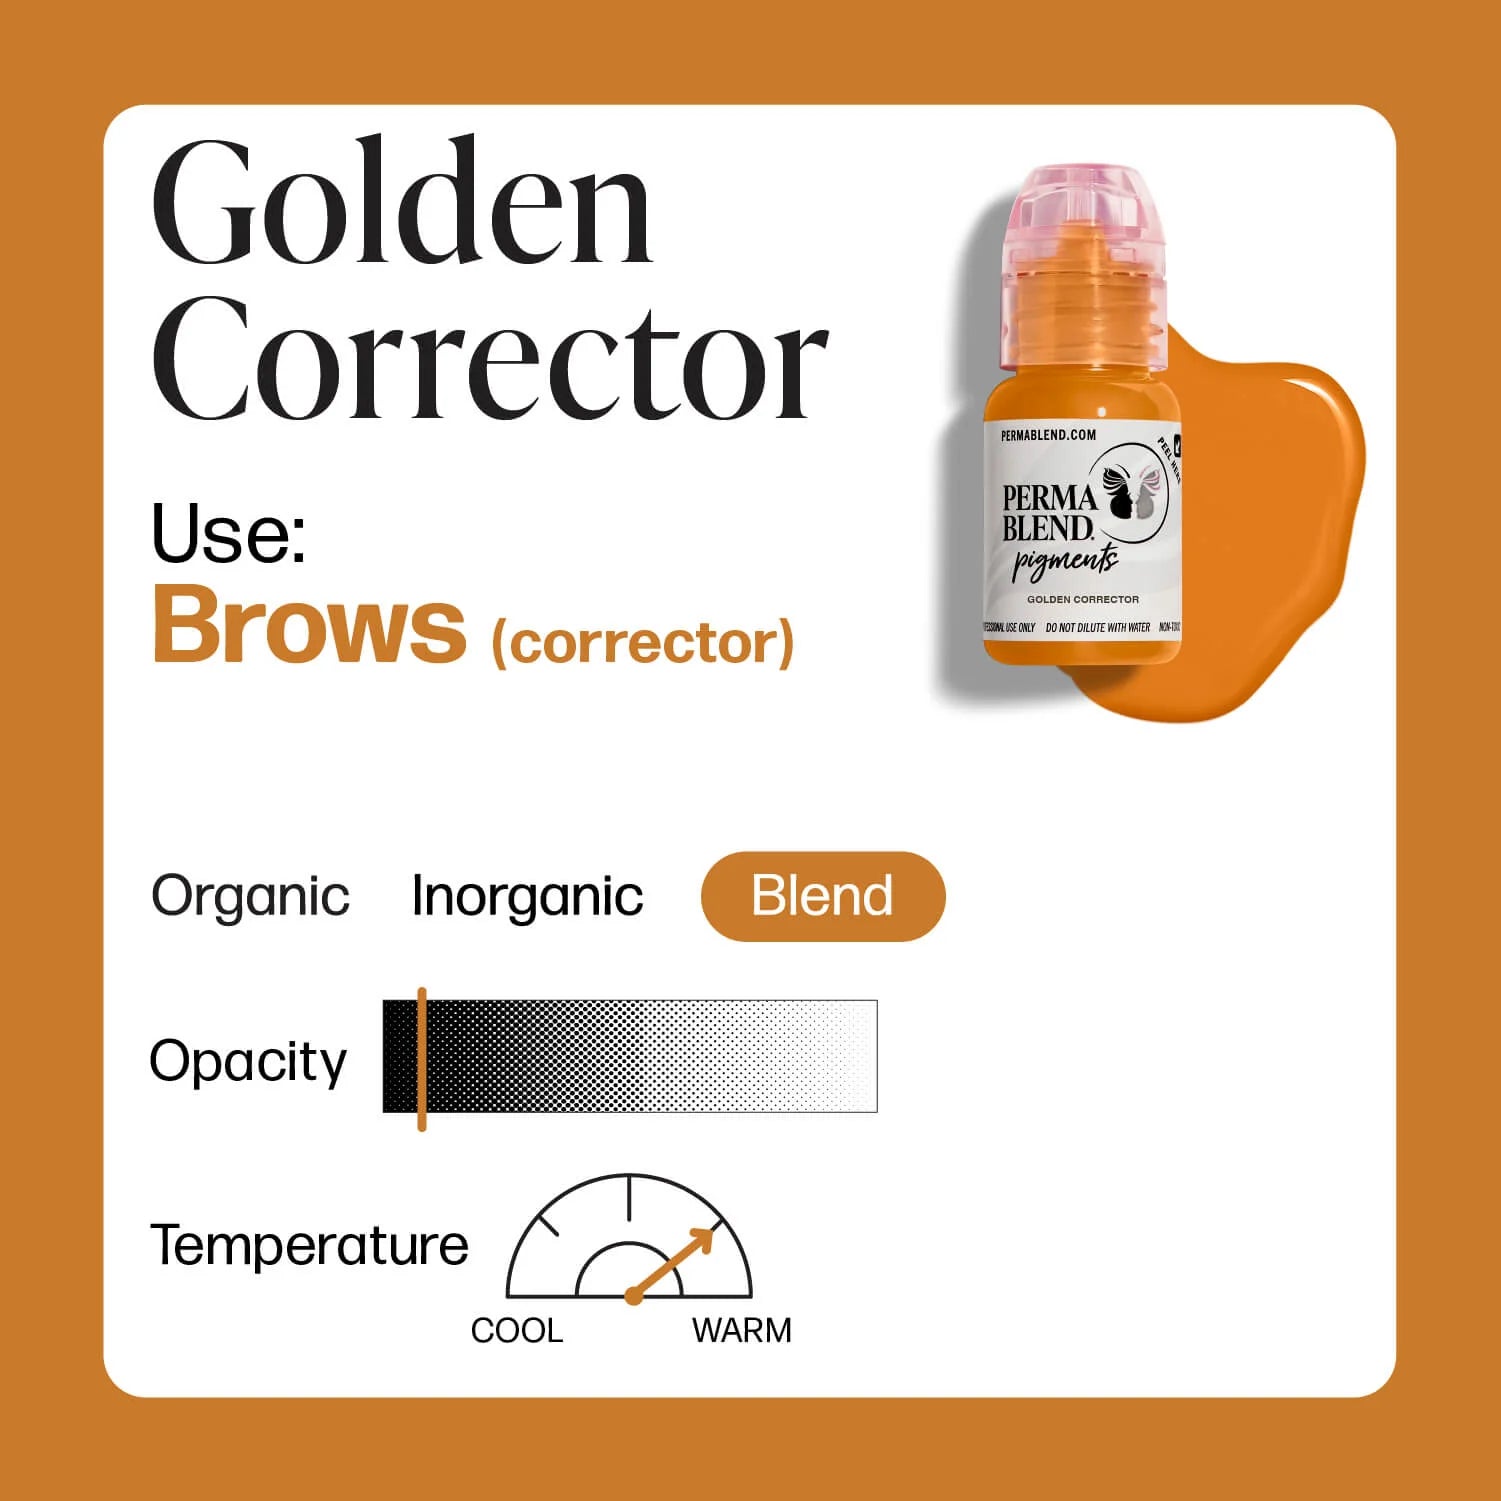 Perma Blend - Golden corrector